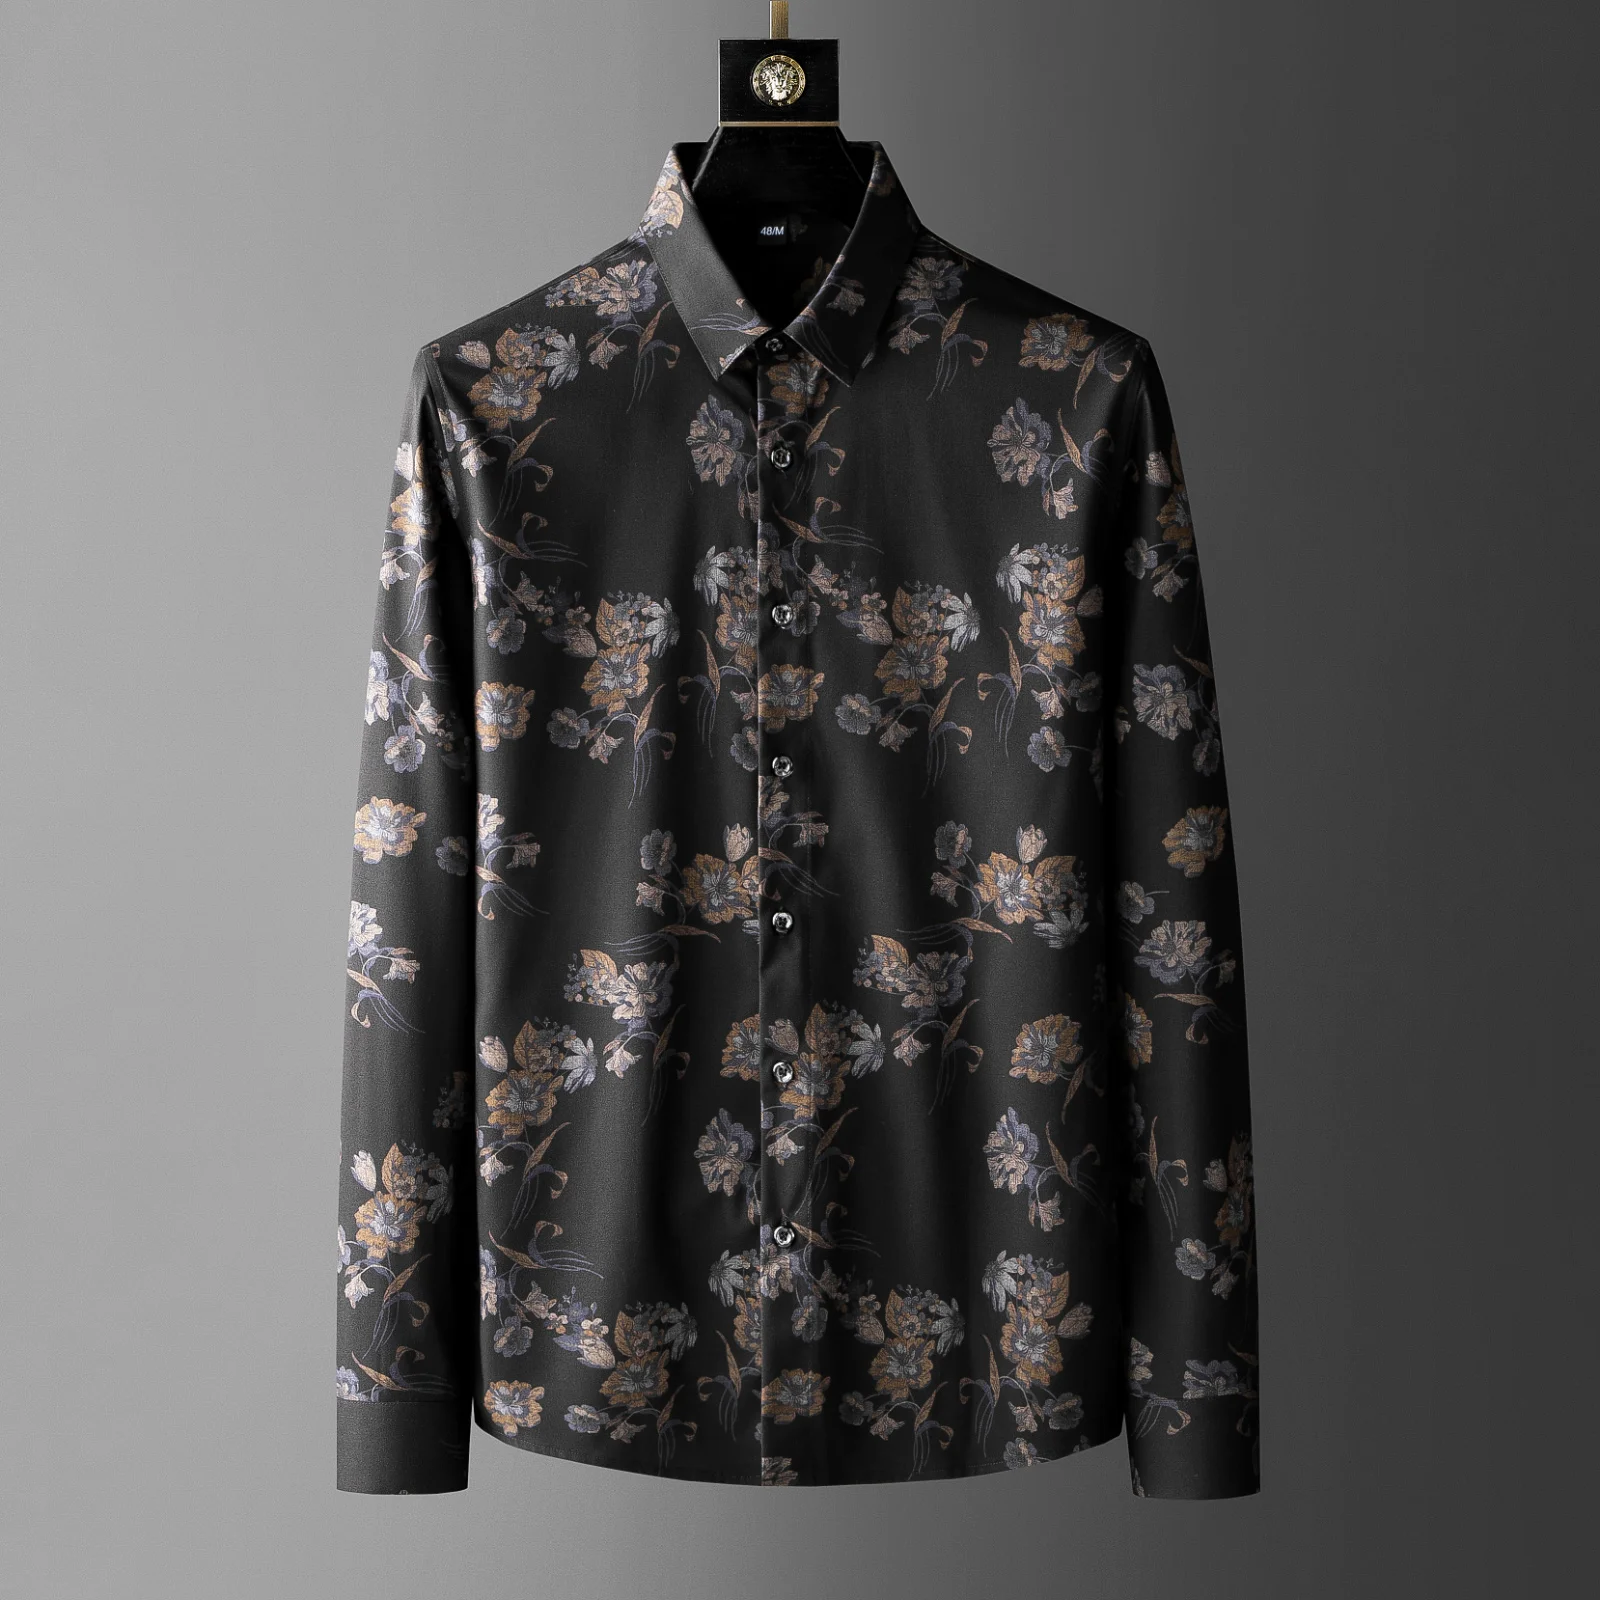 Мужская винтажная рубашка с цветочным принтом, черная классическая рубашка, весна 2022